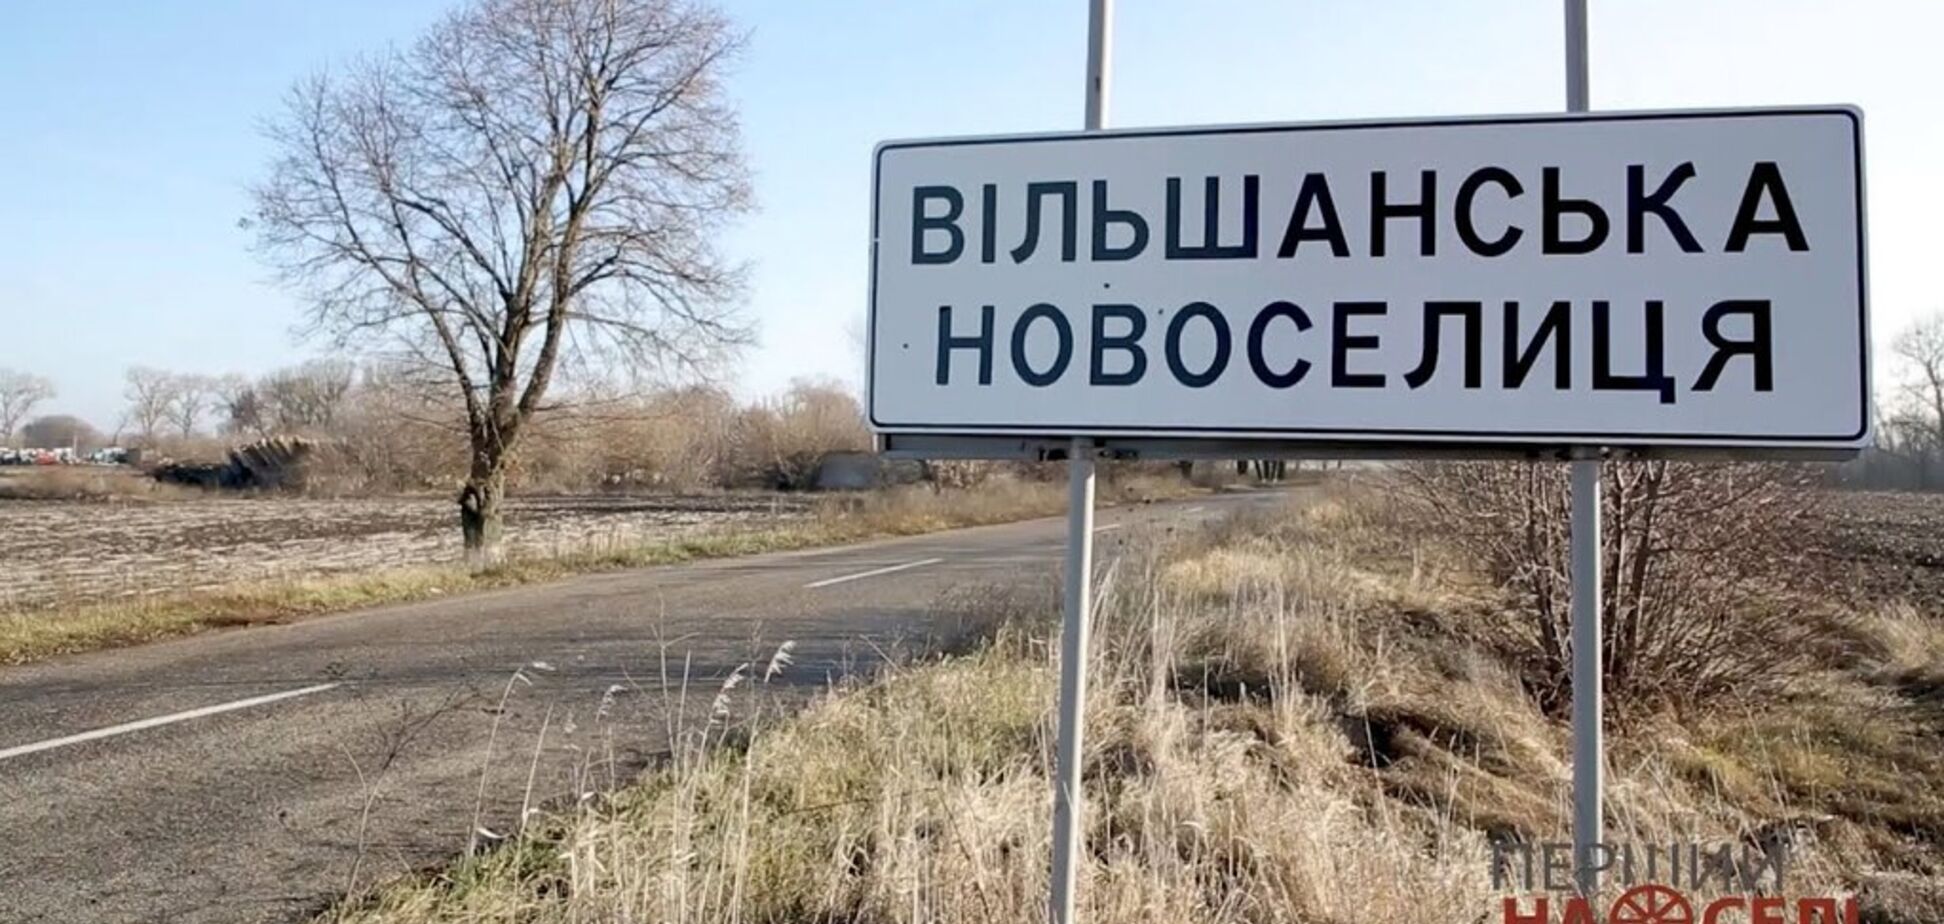 В селі Вільшанська Новоселиця на Київщині запустили безкоштовну маршрутку